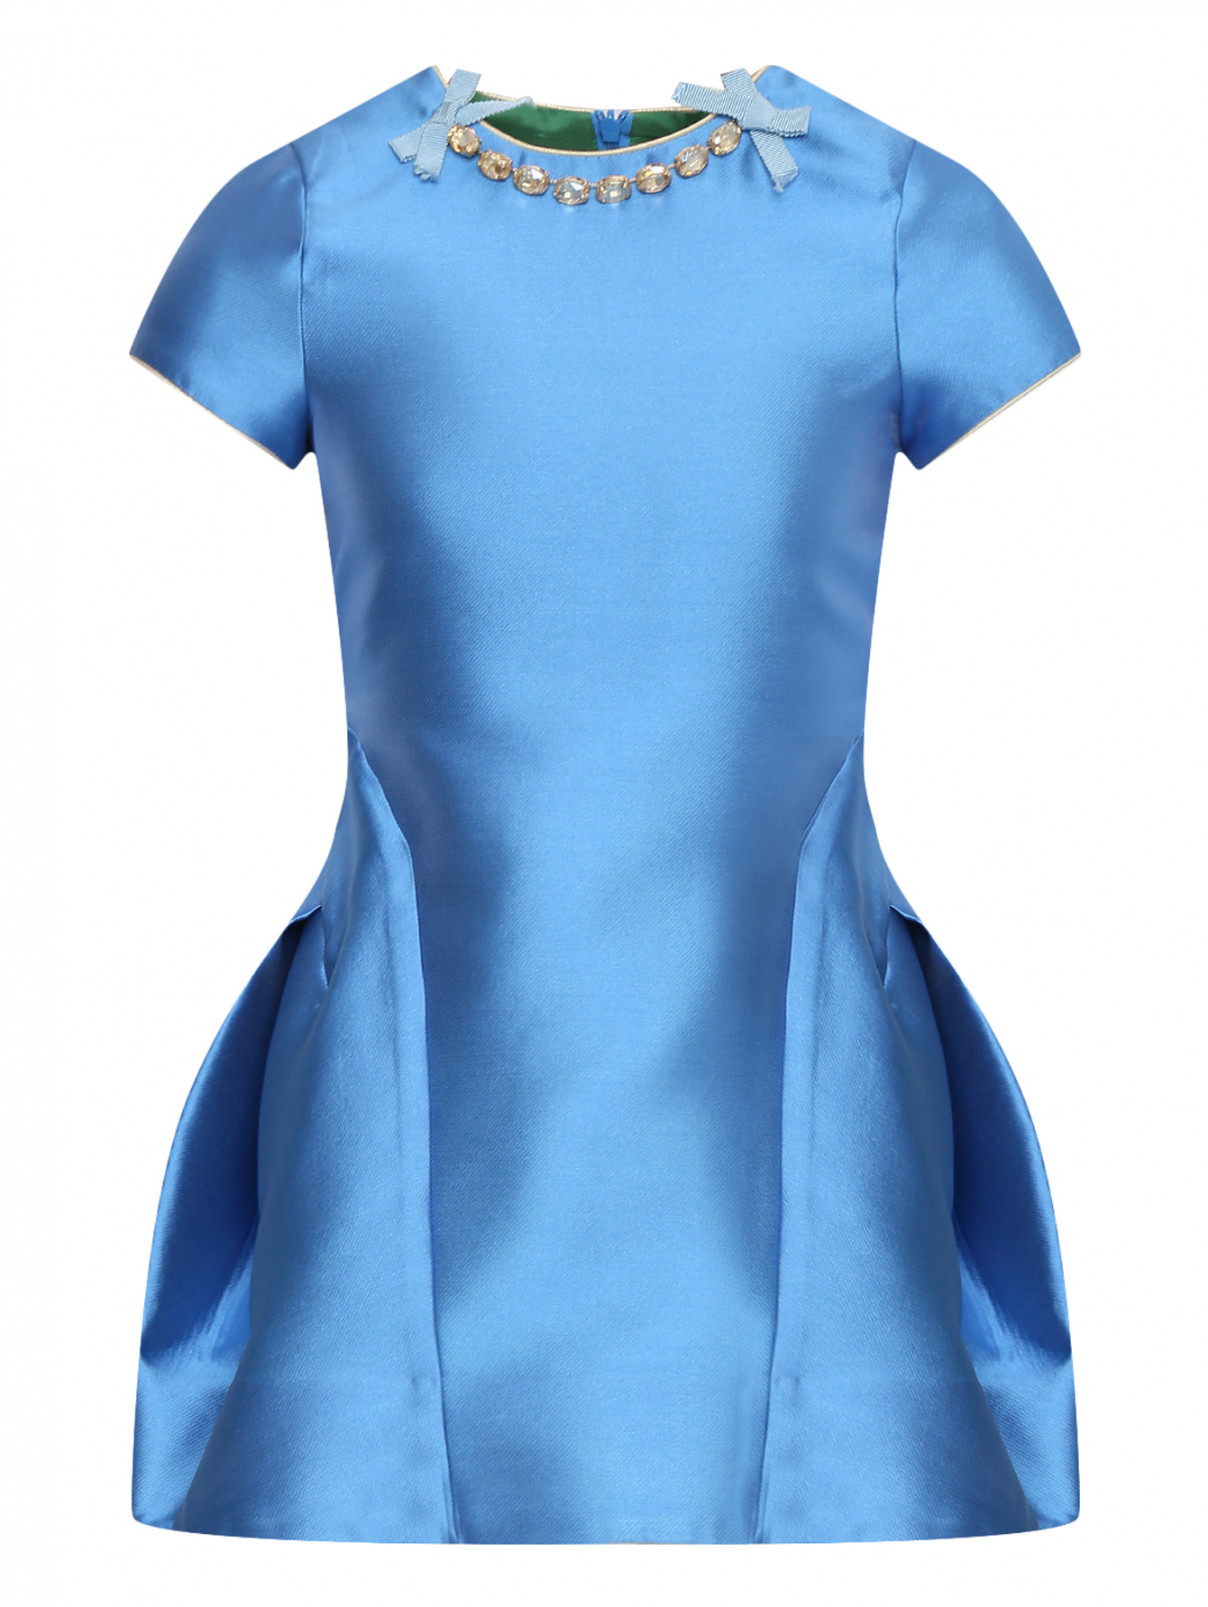 Платье декорированное камнями MiMiSol  –  Общий вид  – Цвет:  Синий